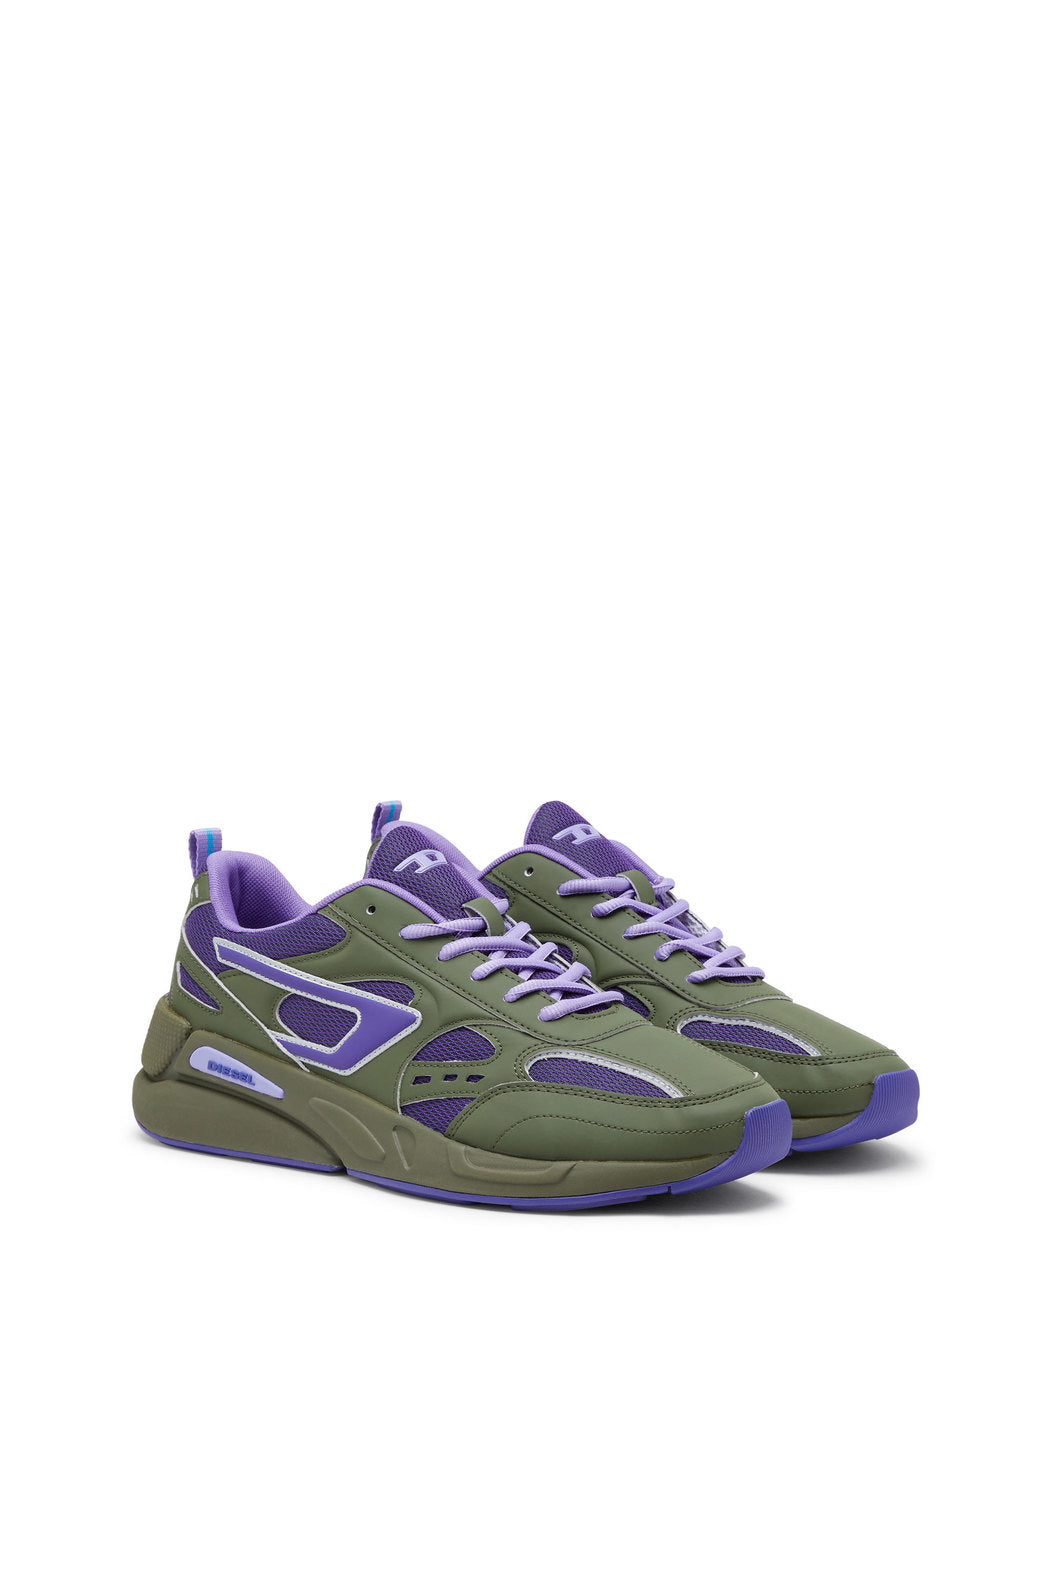 Diesel Y02868P5179 Mens Serendipity Sport Sneakers Green/Purple